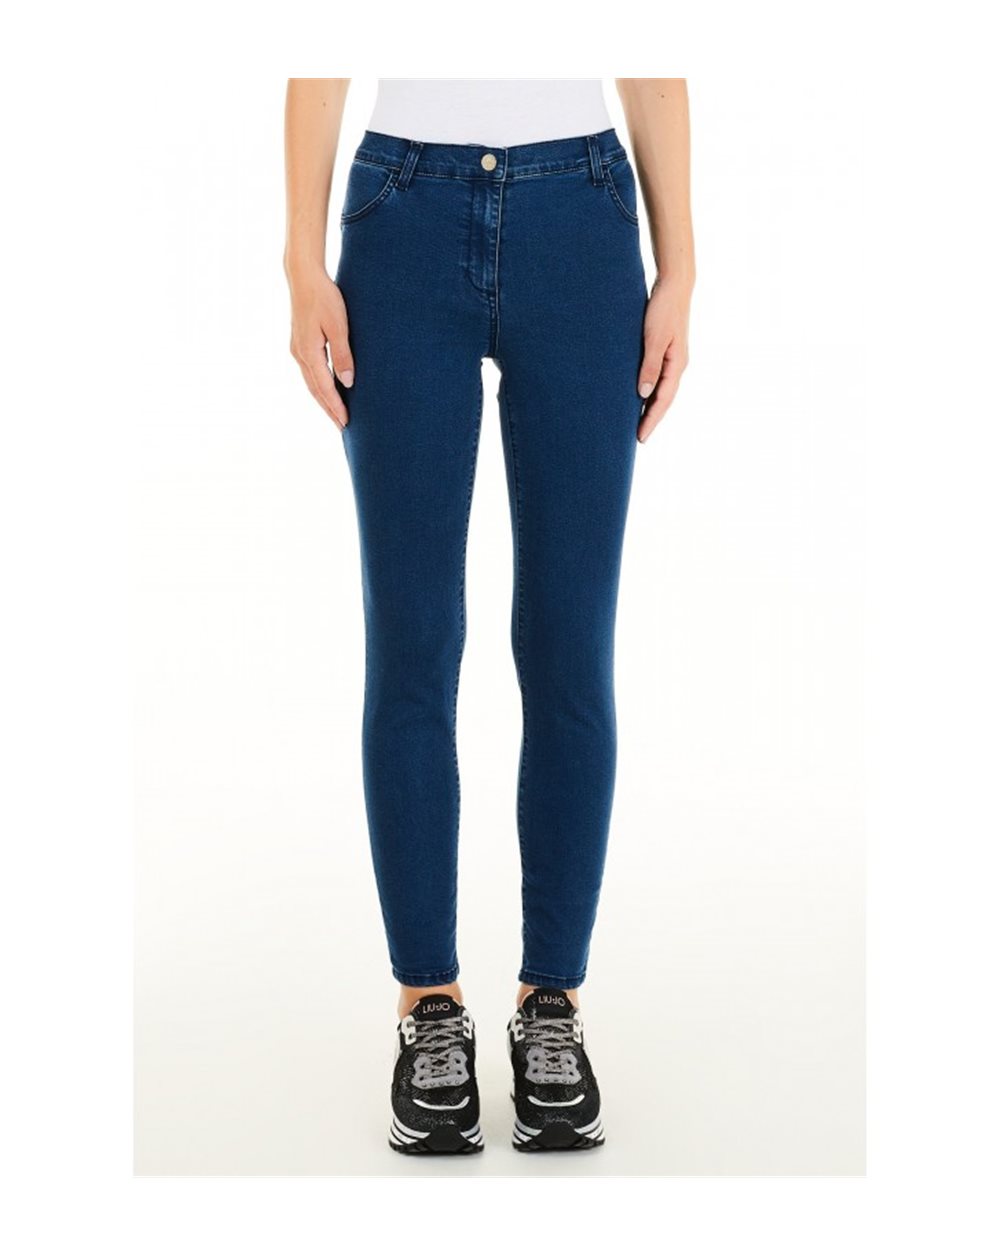 LIU-JO jeans donna blu scuro, elasticizzato , slim. TA1227 D4634